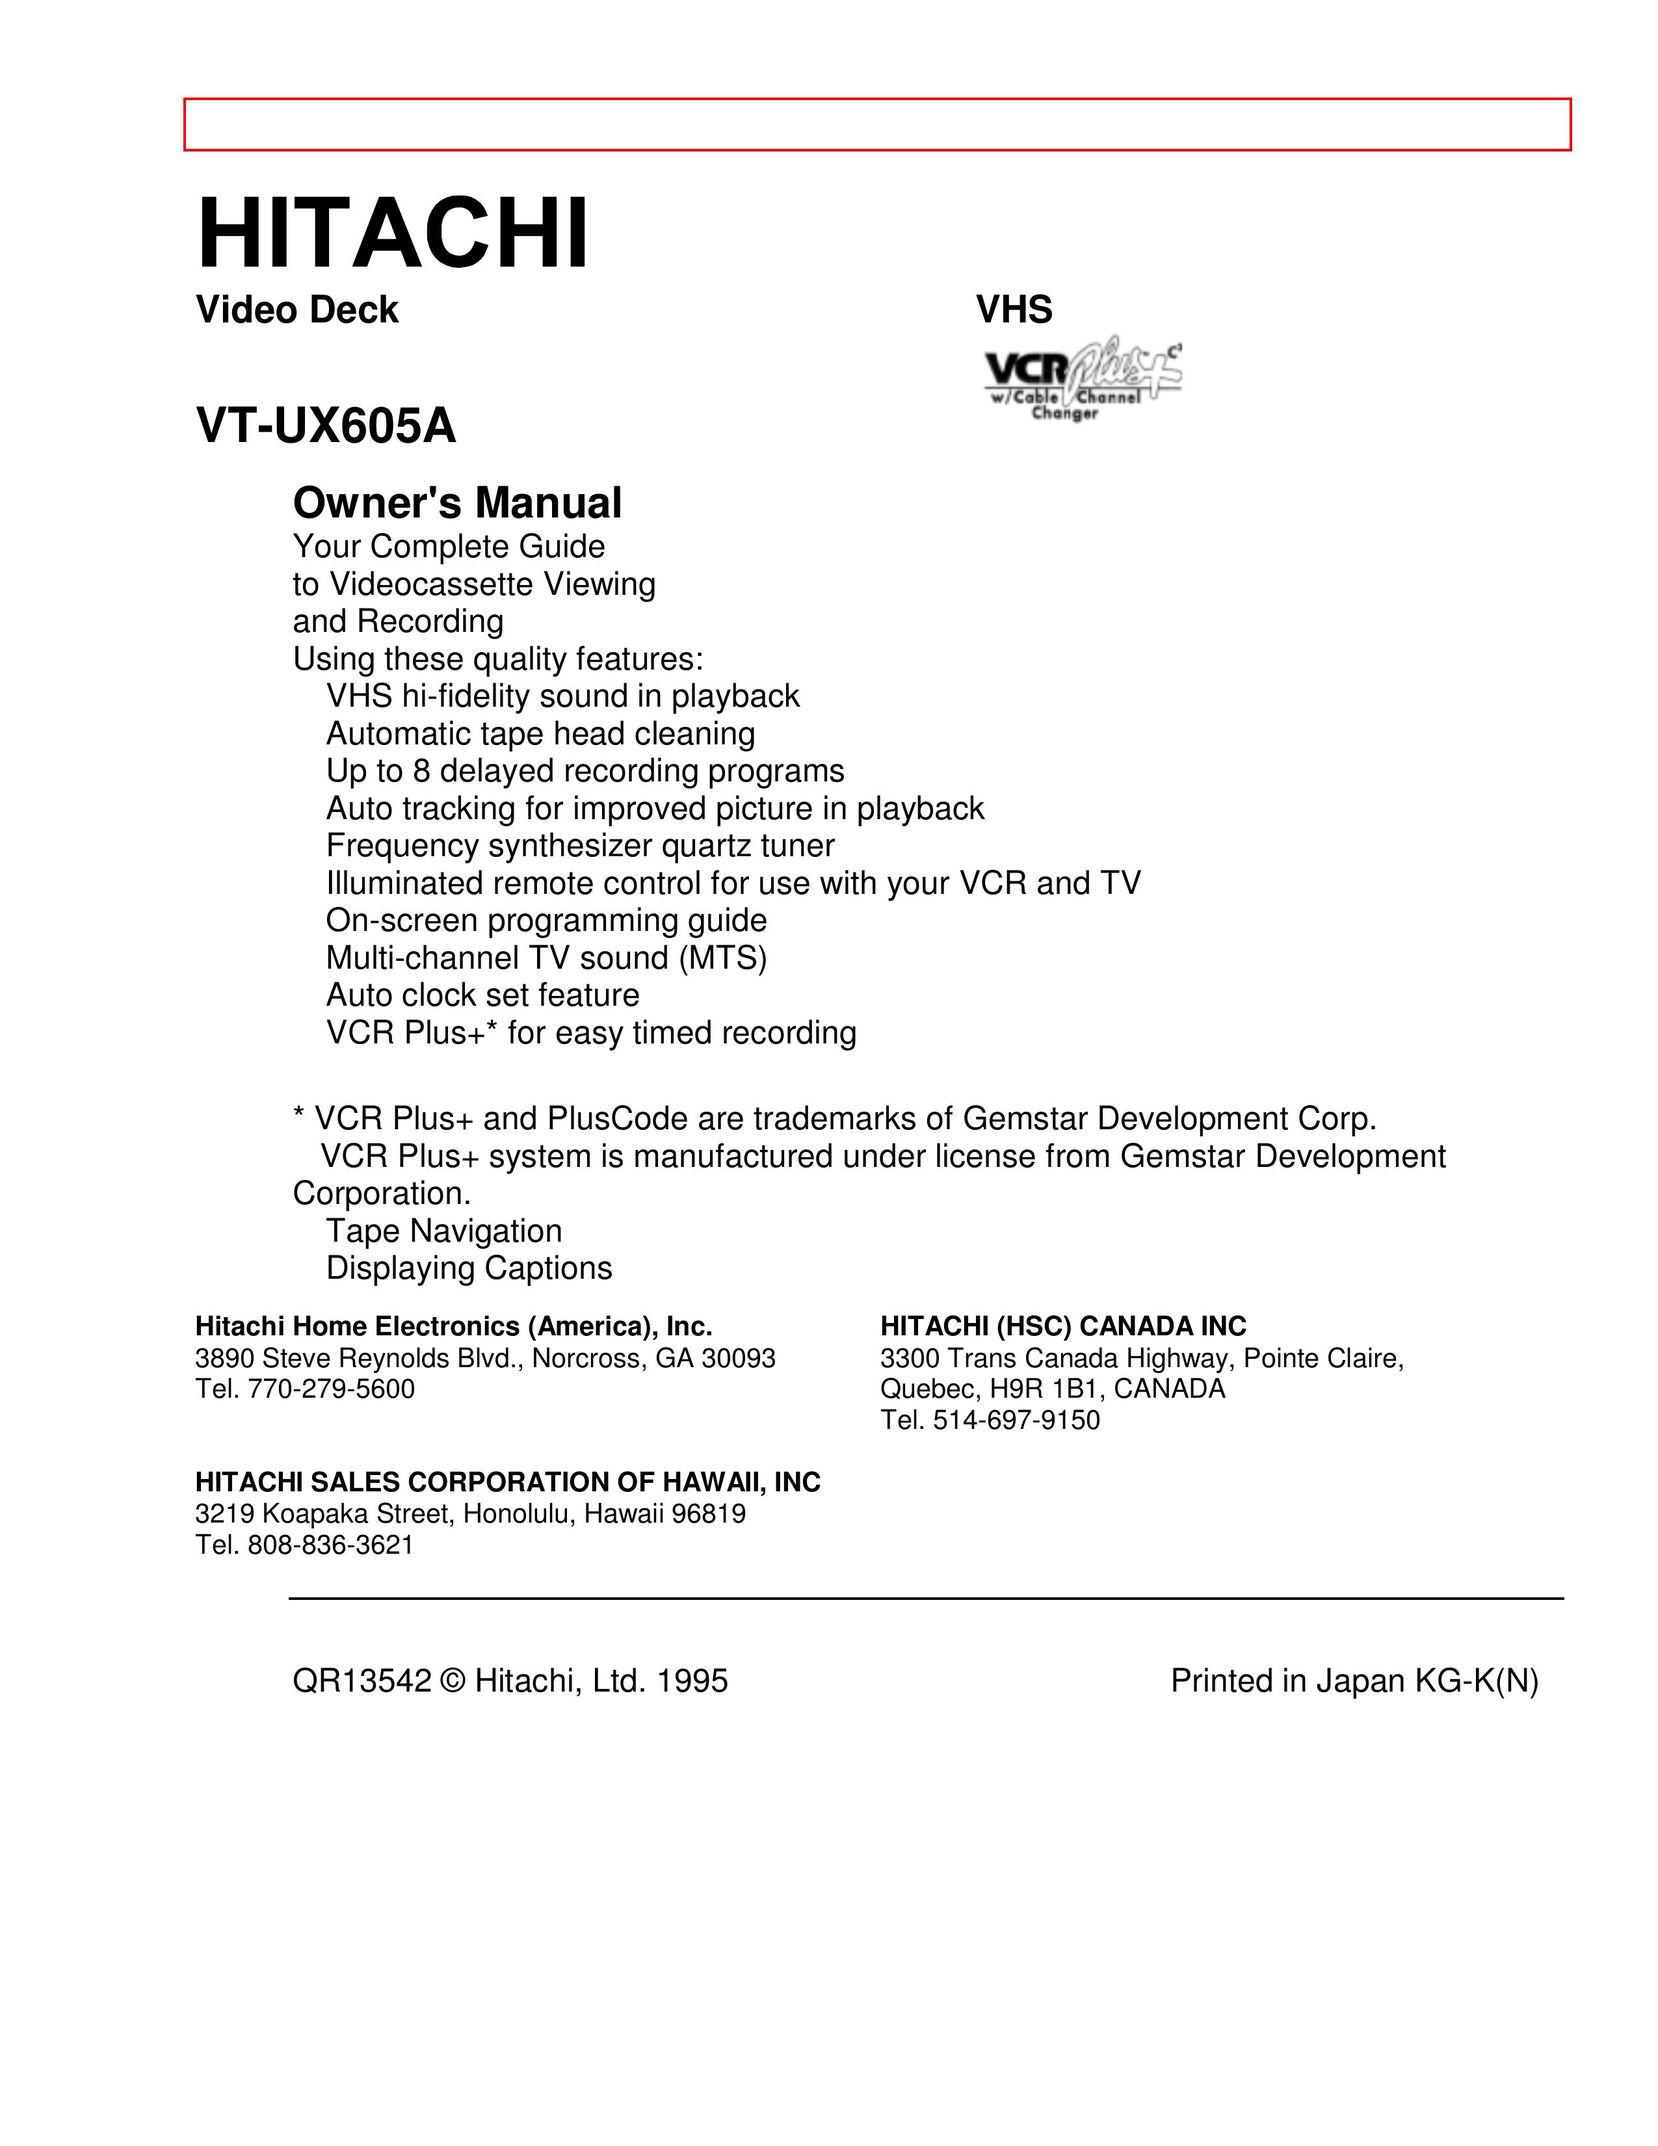 Hitachi VT-UX605A VCR User Manual